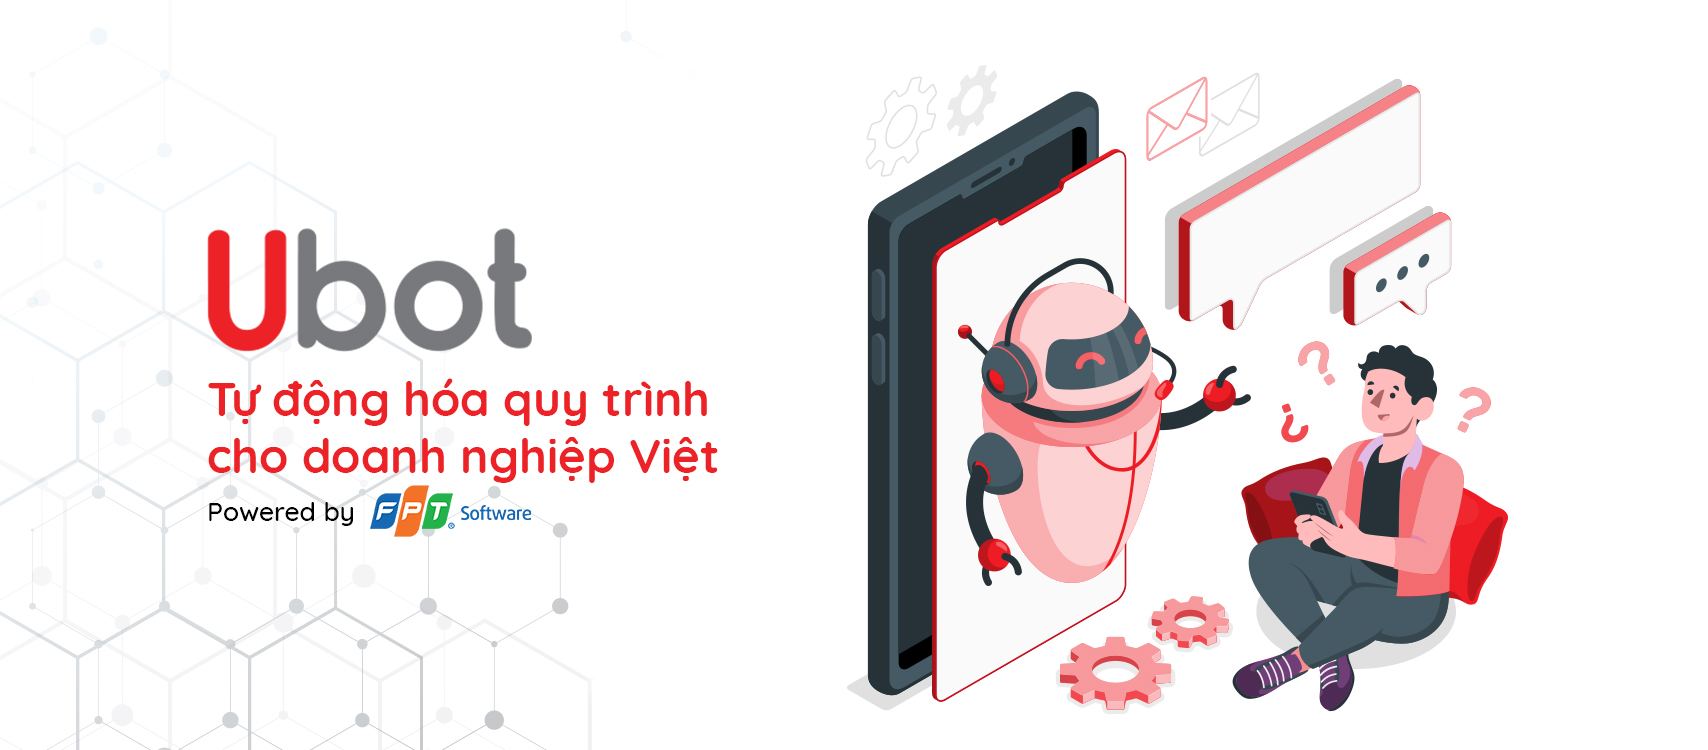 Ubot tự động hóa quy trình cho doanh nghiệp Việt